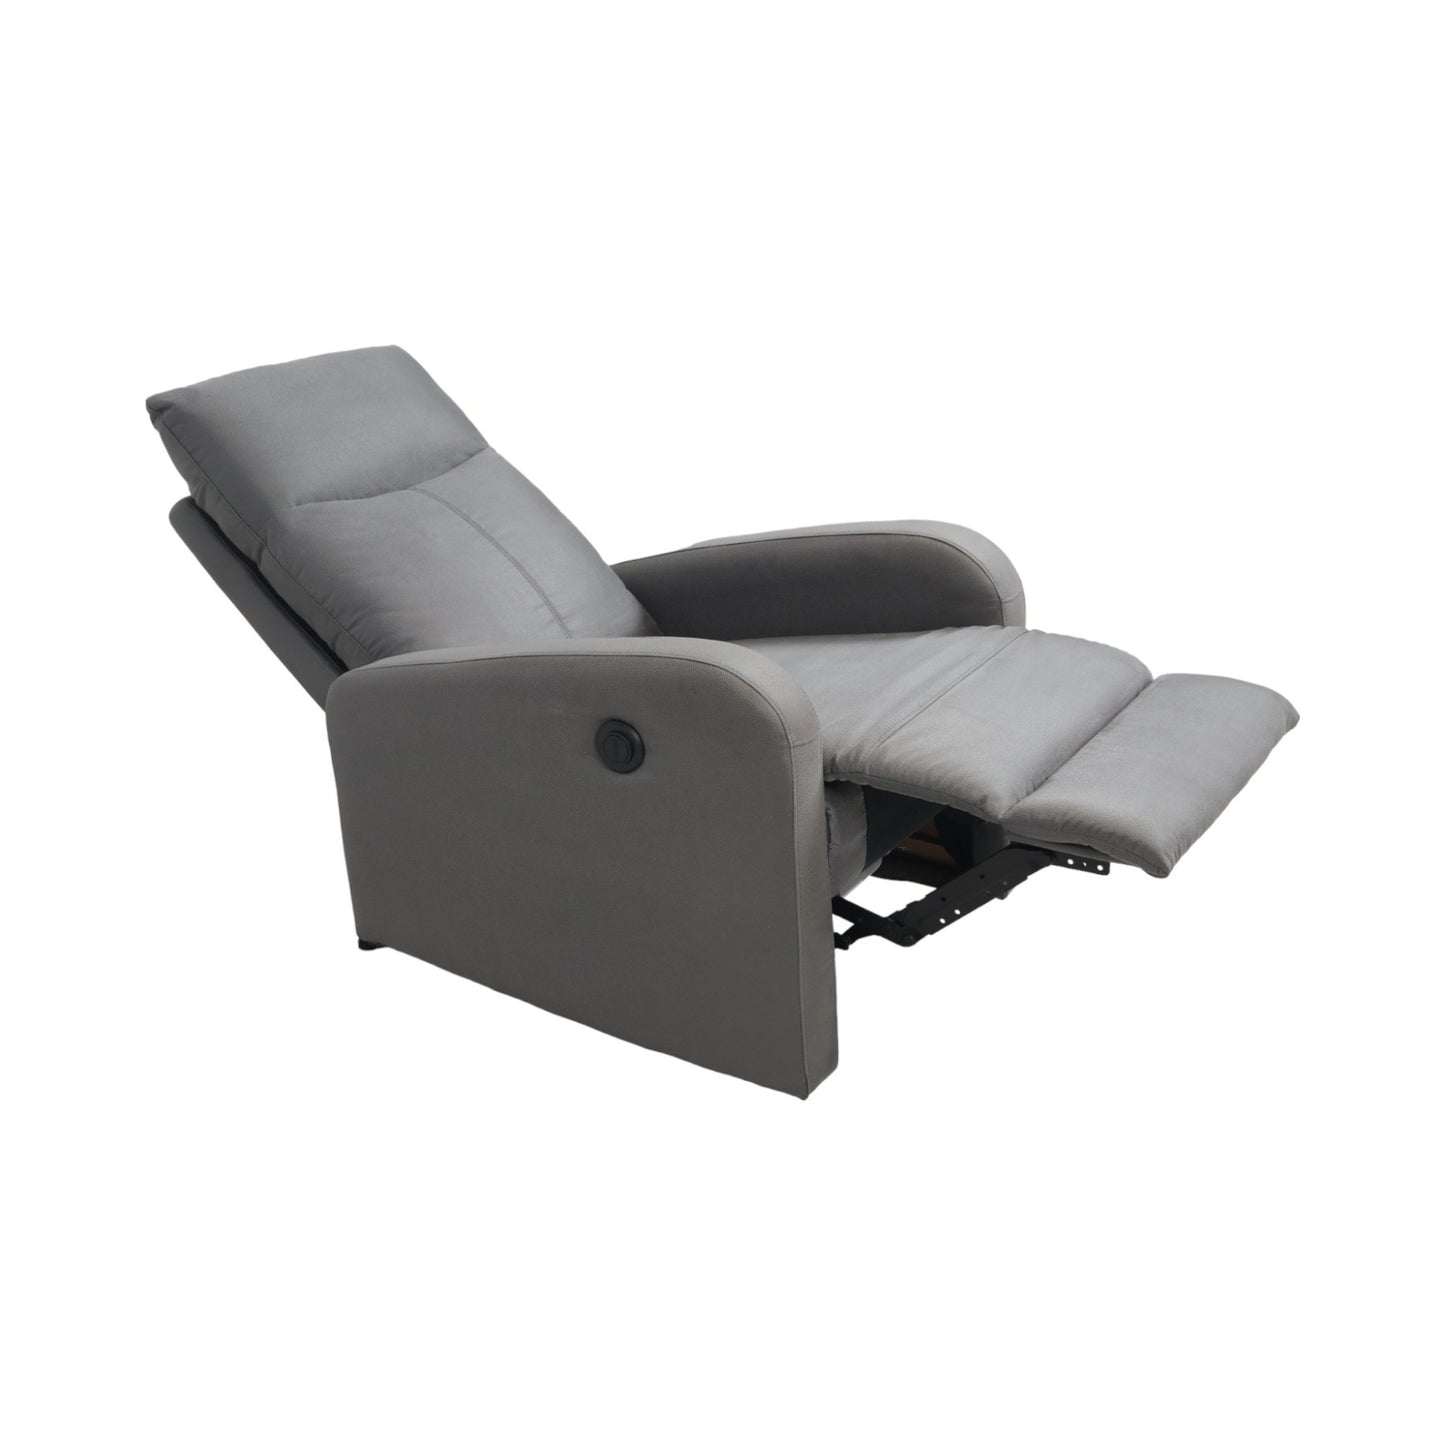 Nyrenset | Grå stol med recliner